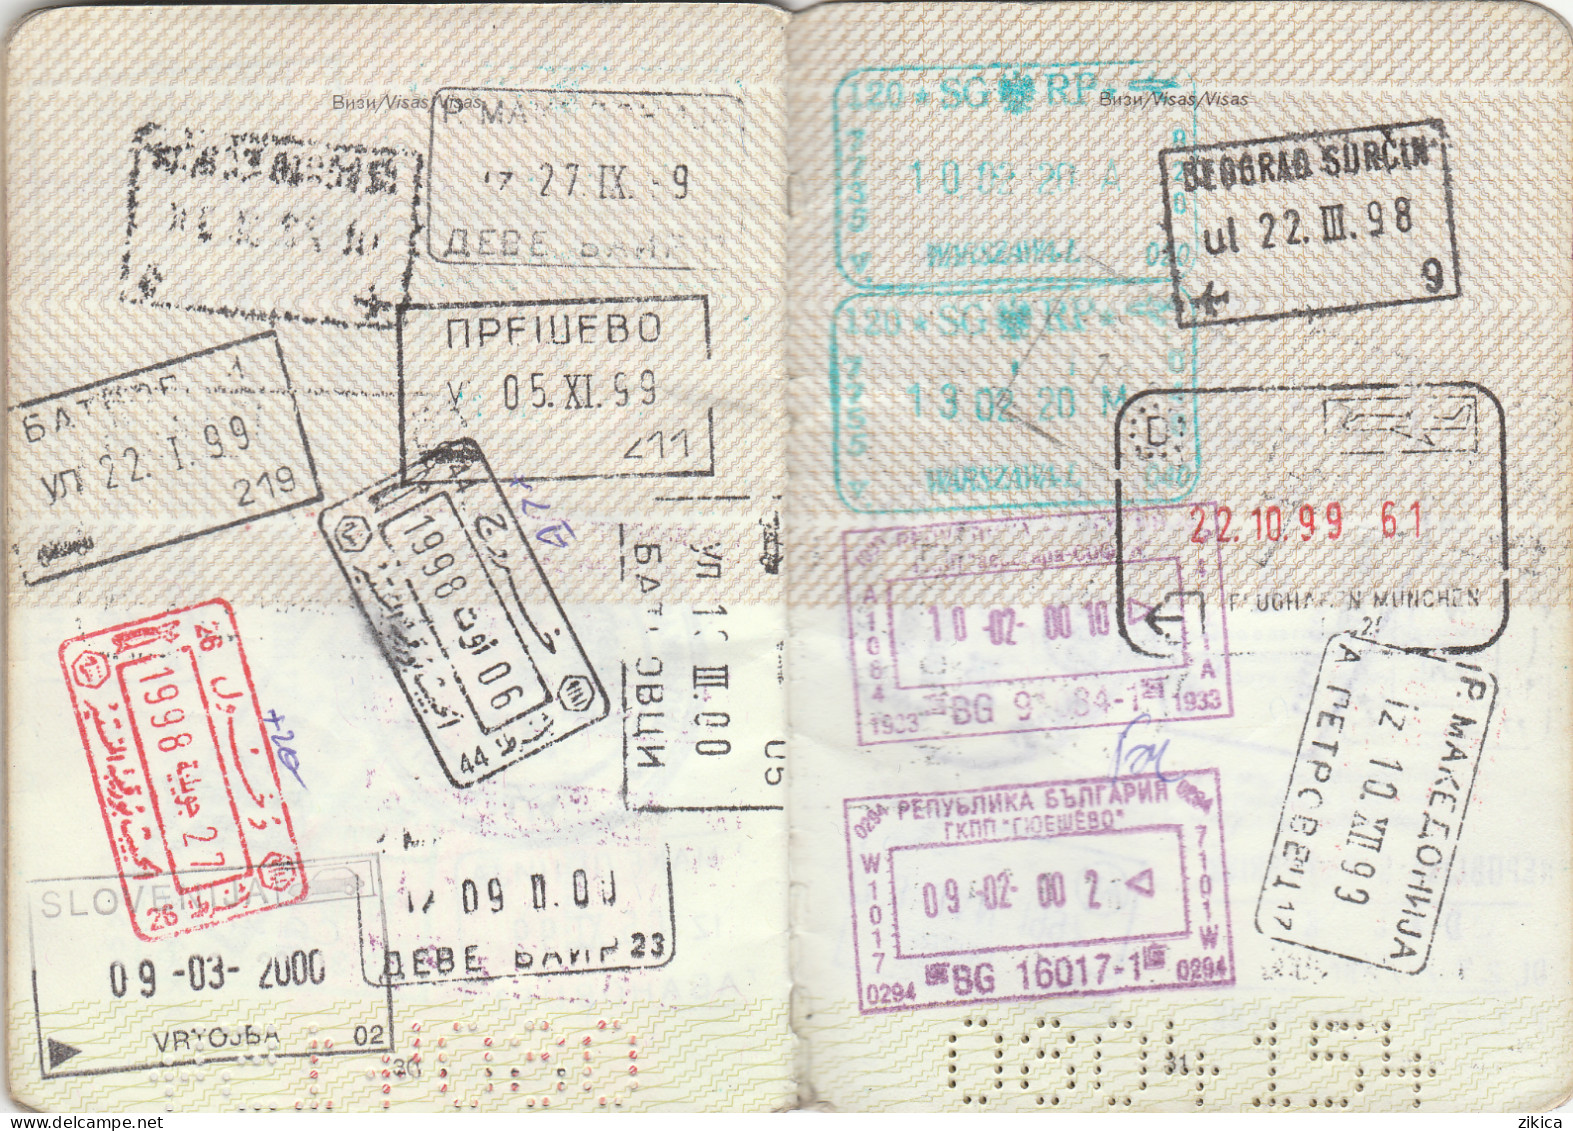 Passeport,passport, pasaporte, reisepass,Republic of Macedonia,visas